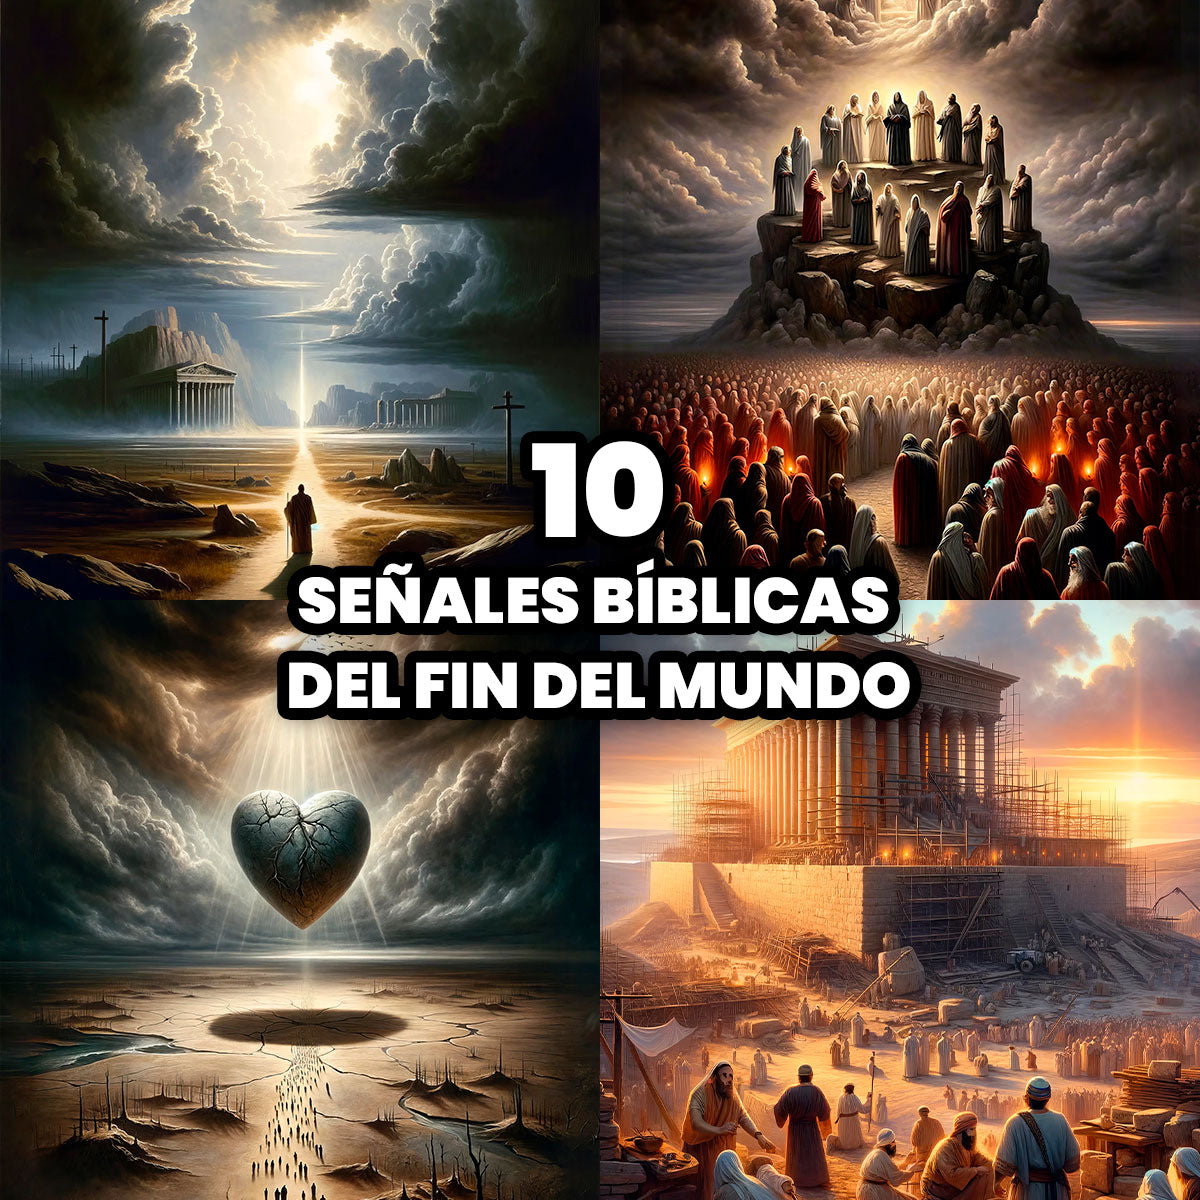 Las 10 Señales Bíblicas del Fin del Mundo